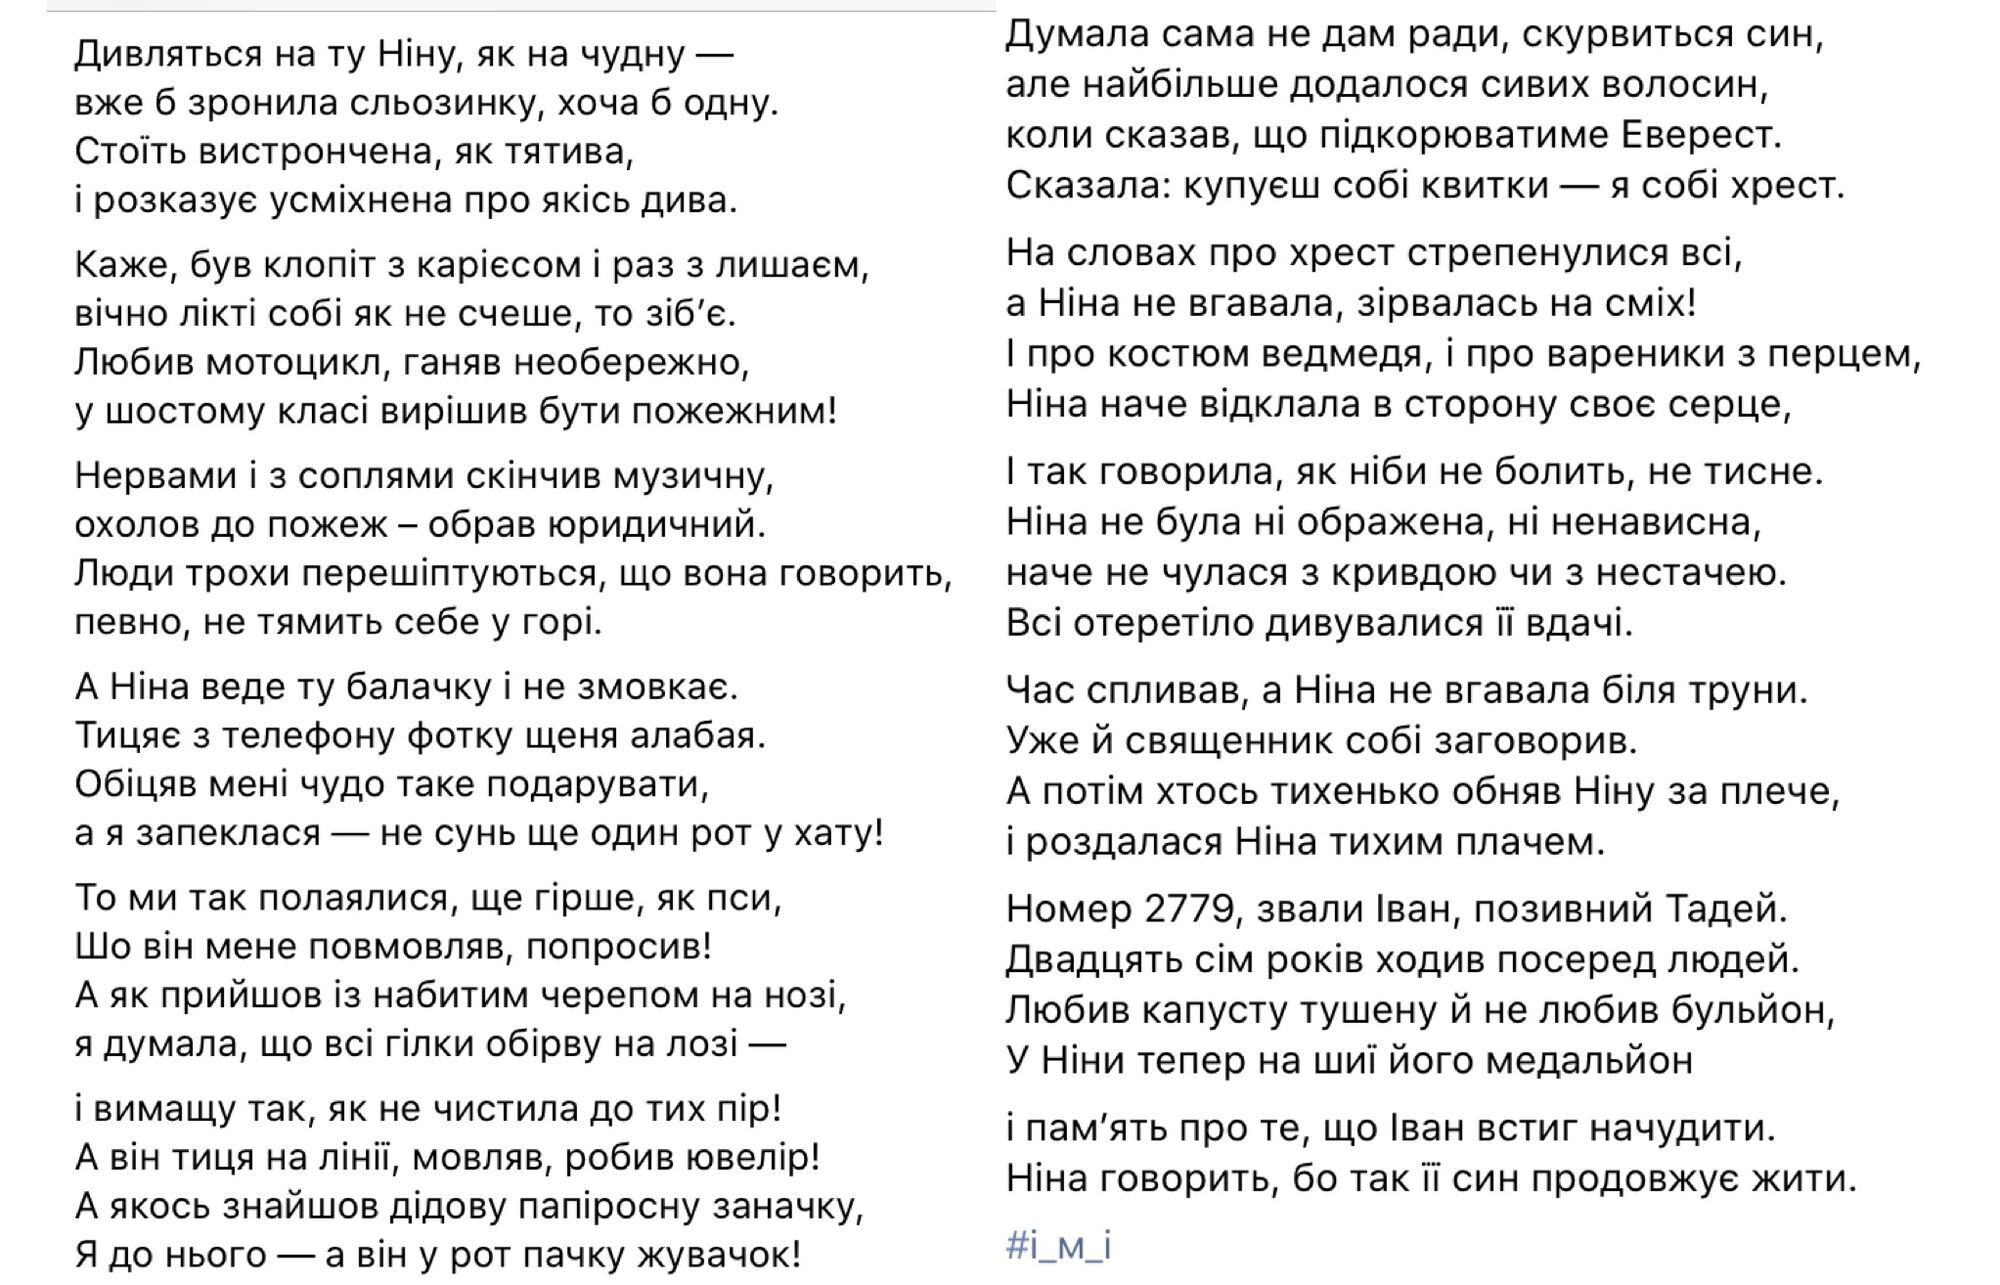 "Номер 2779, звали Іван..." Вірш про українську маму, яка втратила сина на війні, довів мережу до сліз